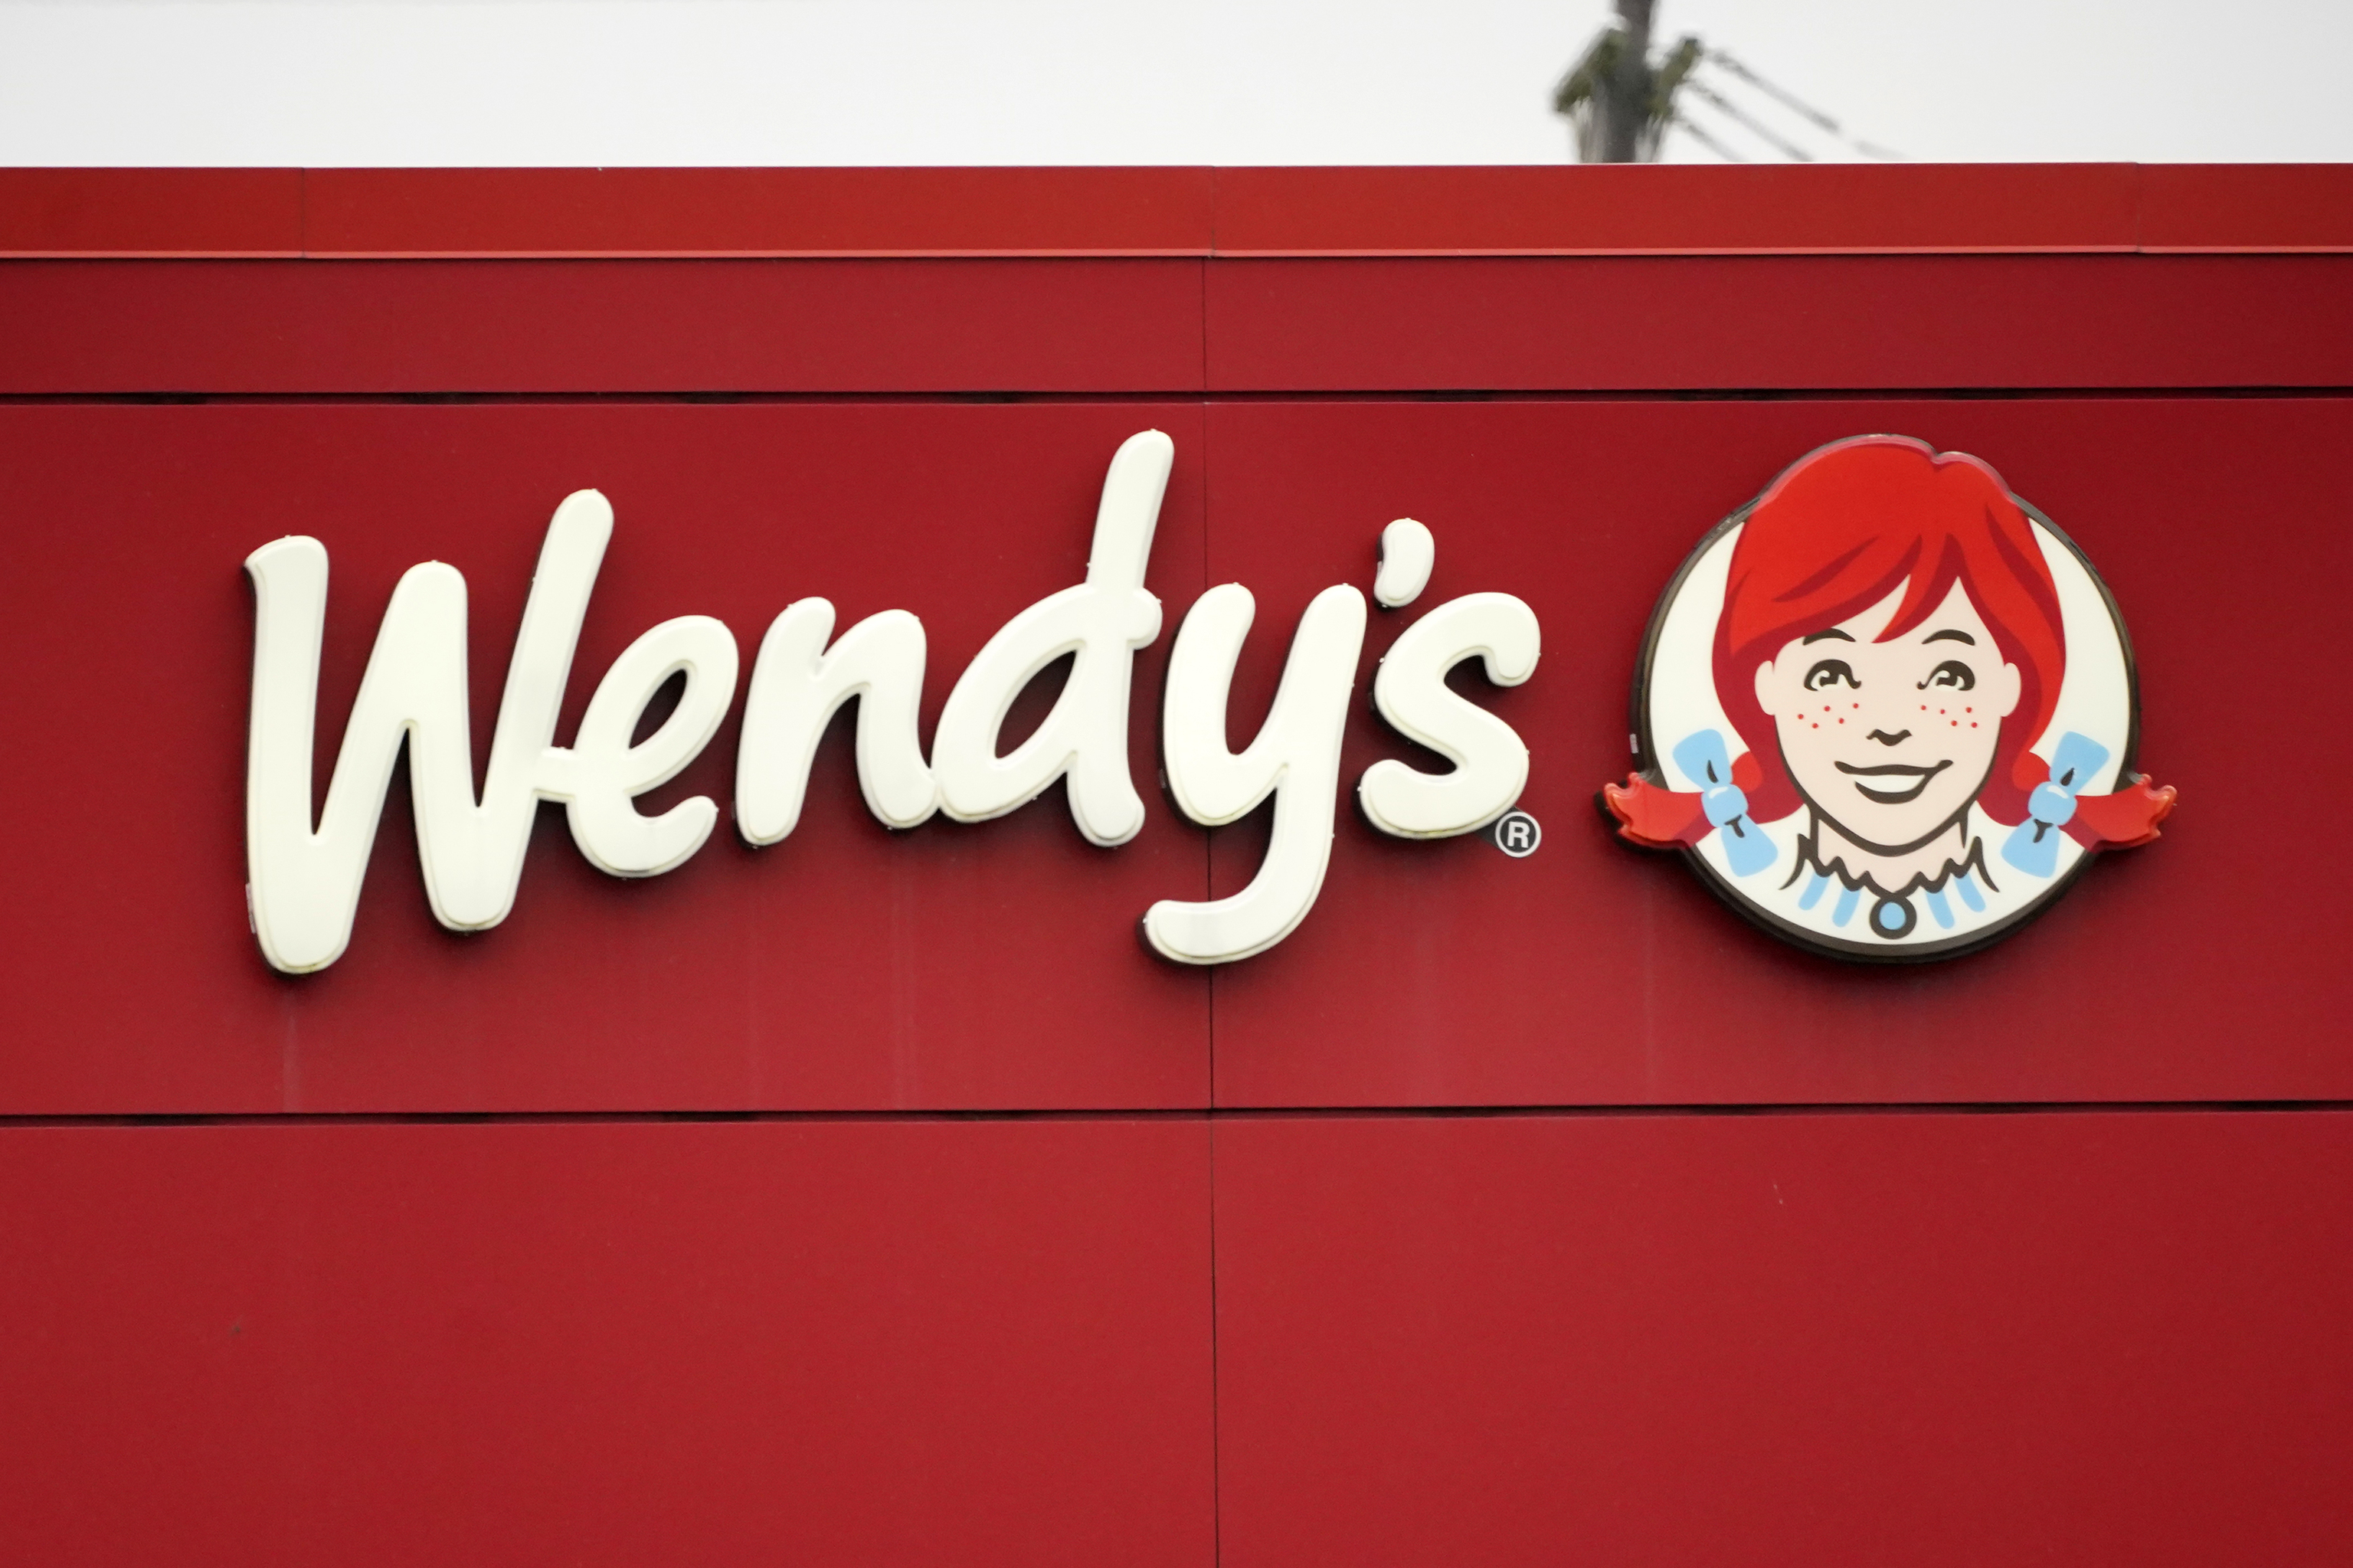 La cadena de restaurantes Wendy’s pondrá precios al estilo Uber: sus hamburguesas subirán en función de la demanda